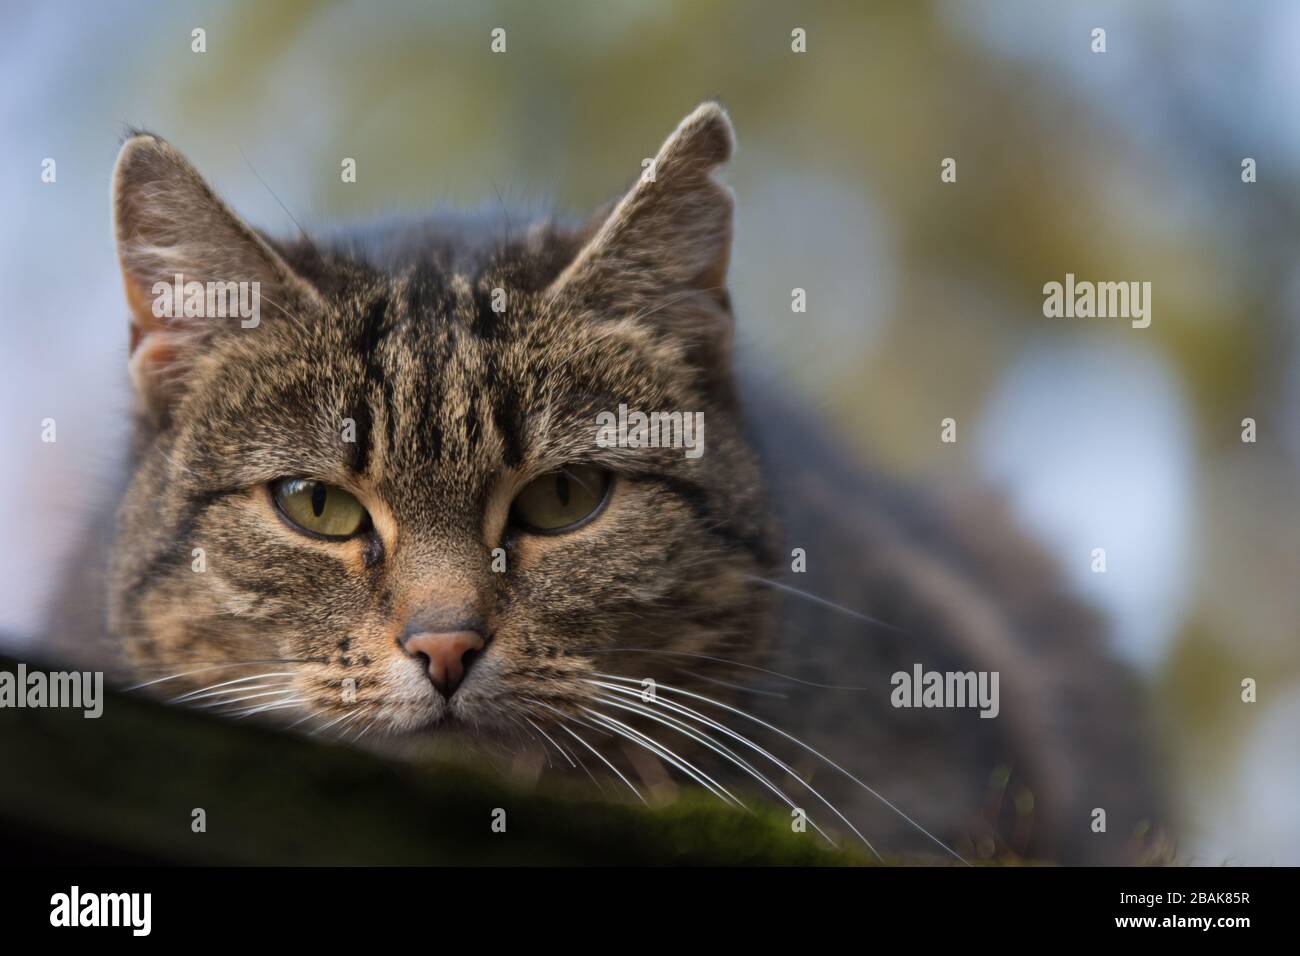 Nahaufnahme einer besprühten Tabby-Katze mit einer einschneidig wirkenden Narbe auf dem Ohr, die direkt in die Kamera blickt - Kopierraum Stockfoto